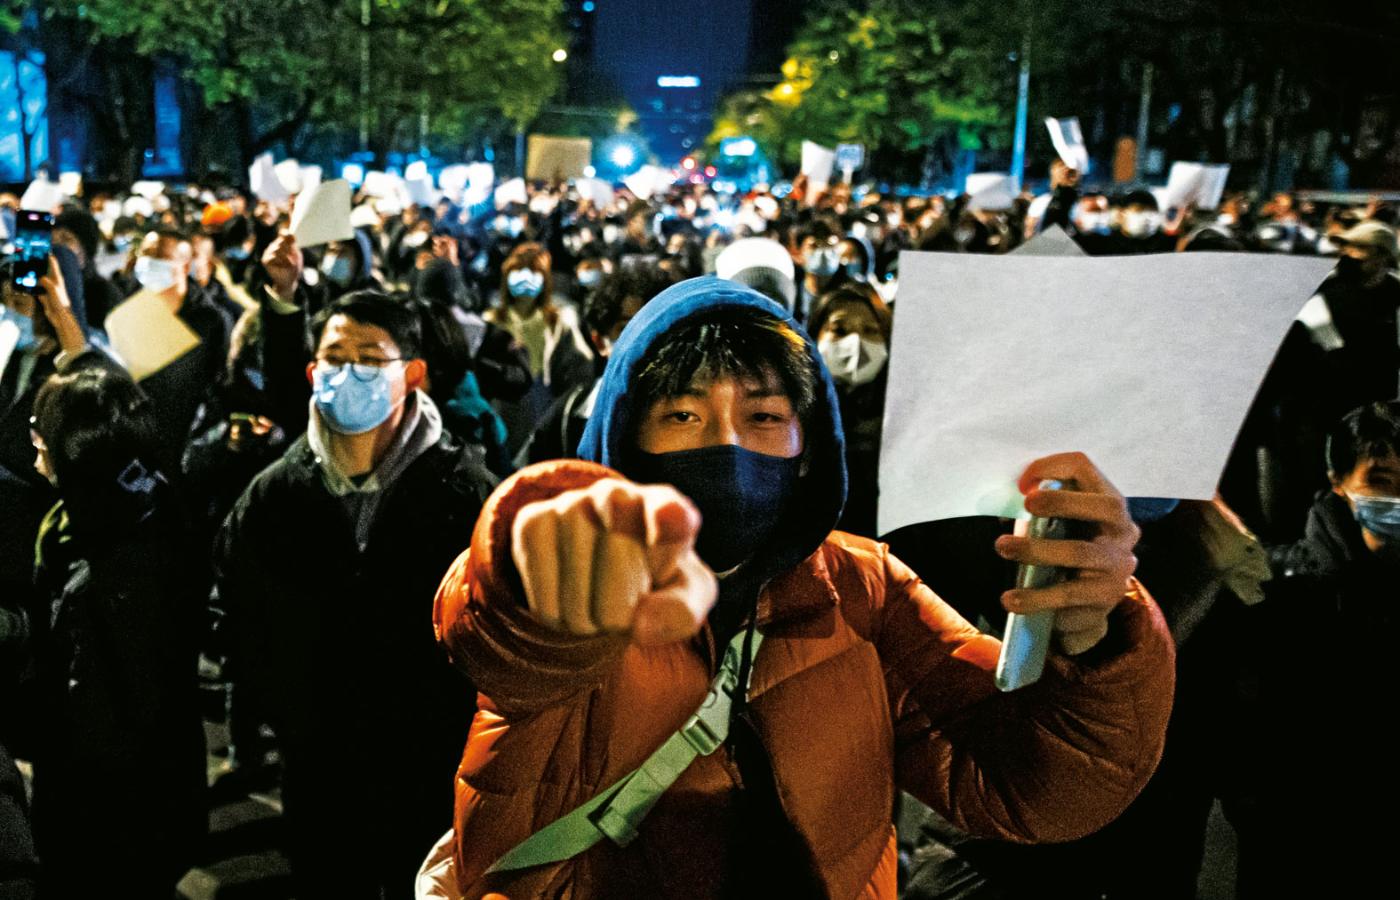 Pekin, symbolem protestów stały się puste kartki, mówi się już o rewolucji A4.